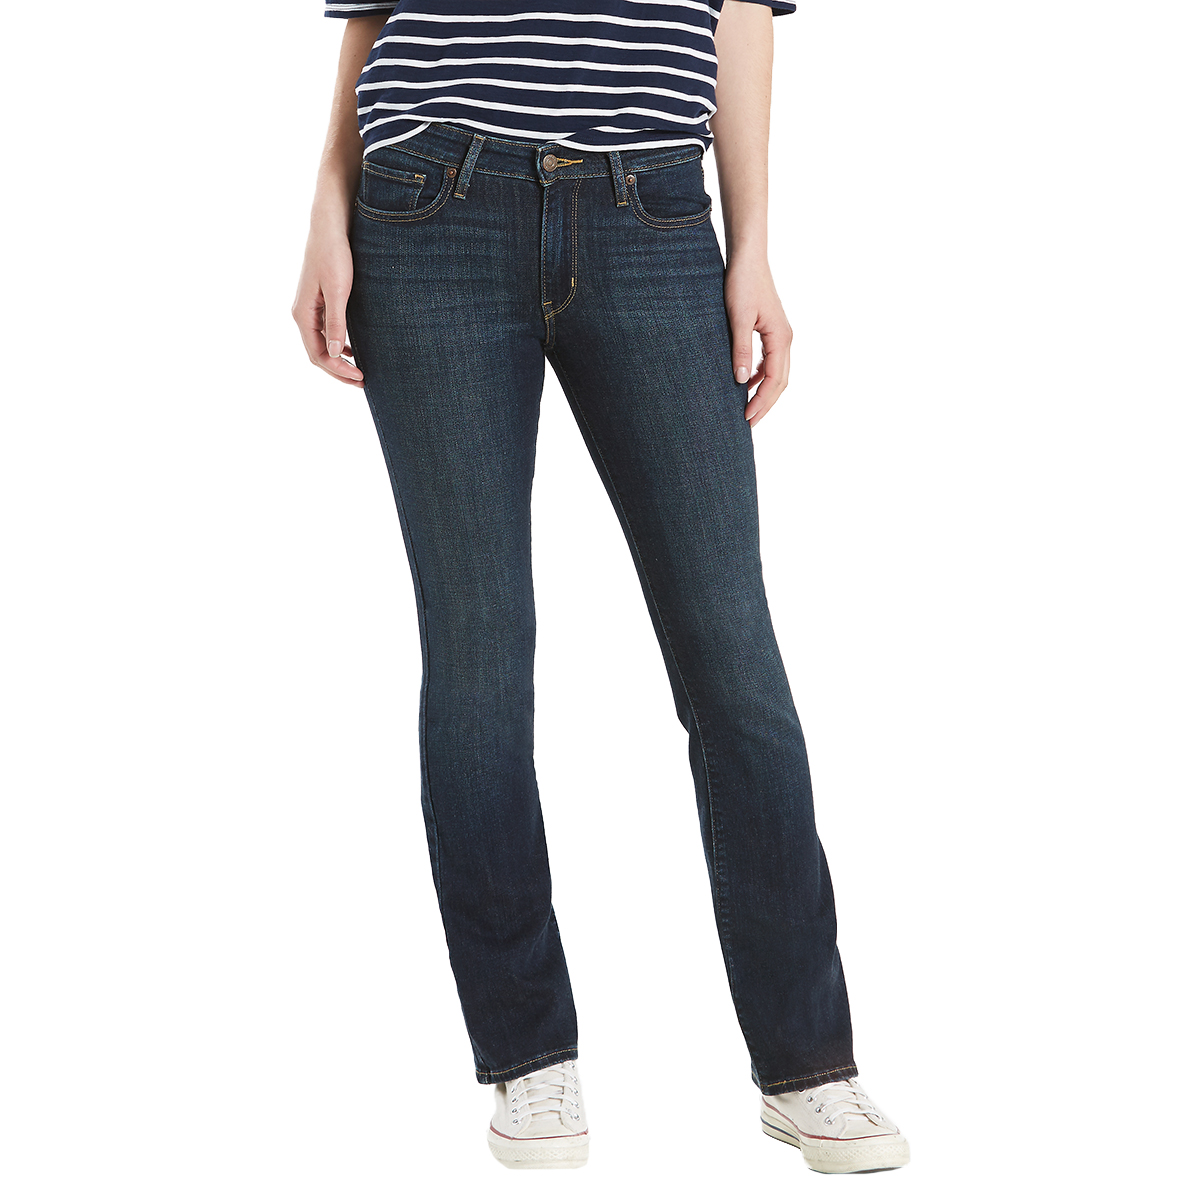 Levi's Women's 715 Vintage Boot Cut Jeans - Blue, 29